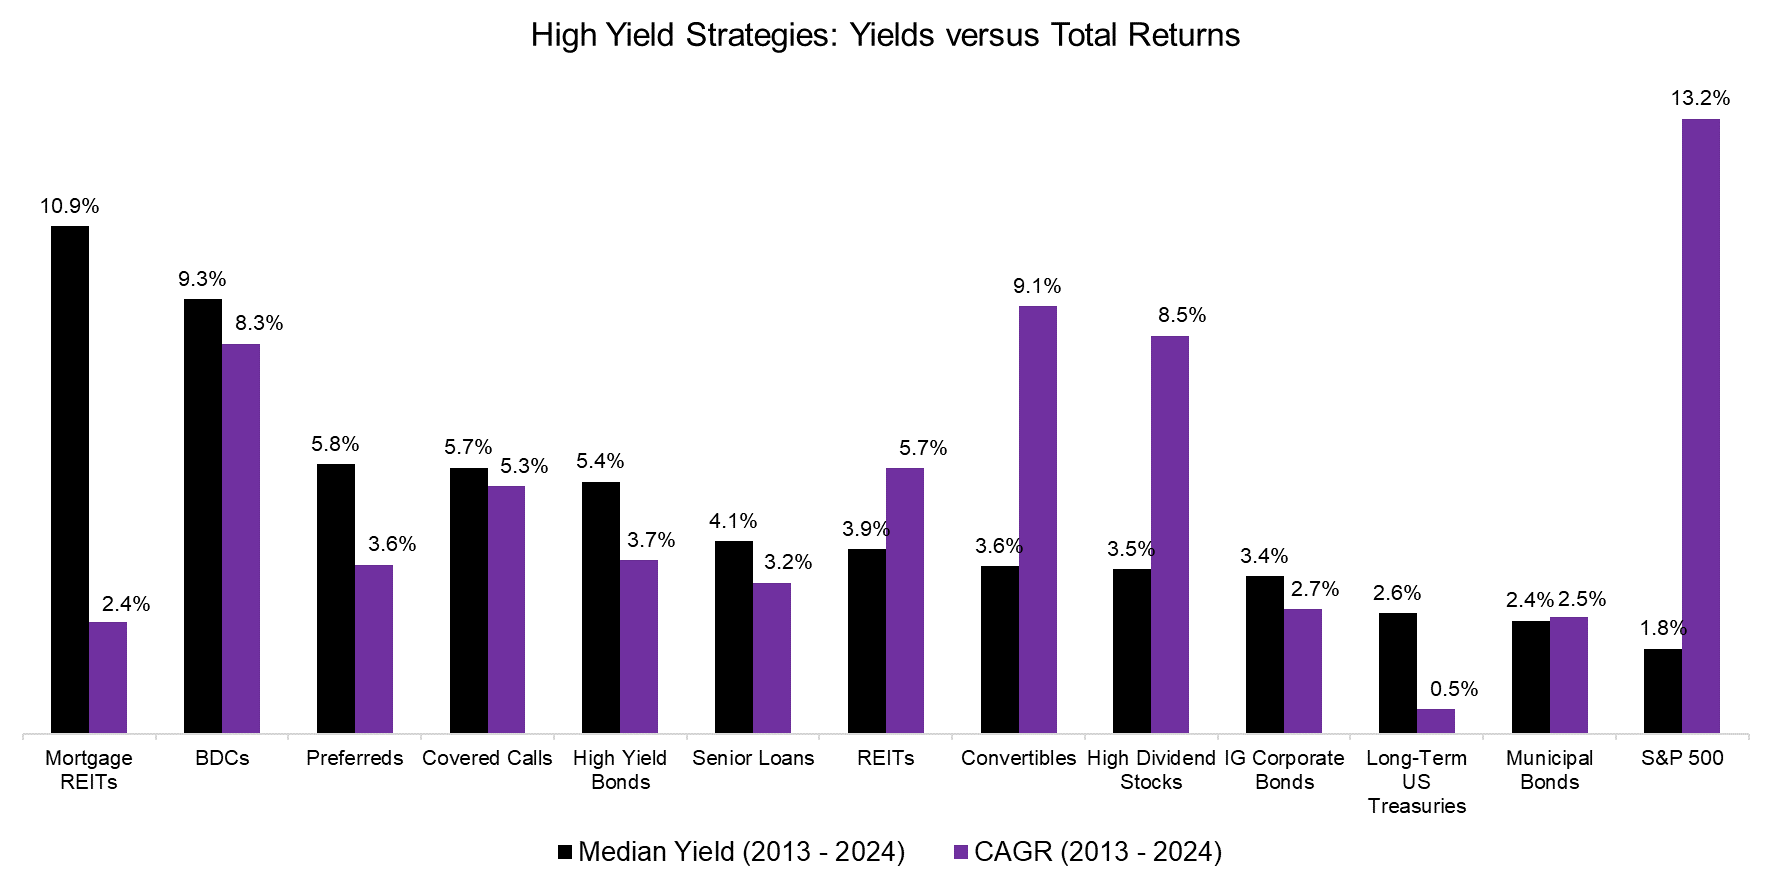 High Yield Strategies Yields versus Total Returns